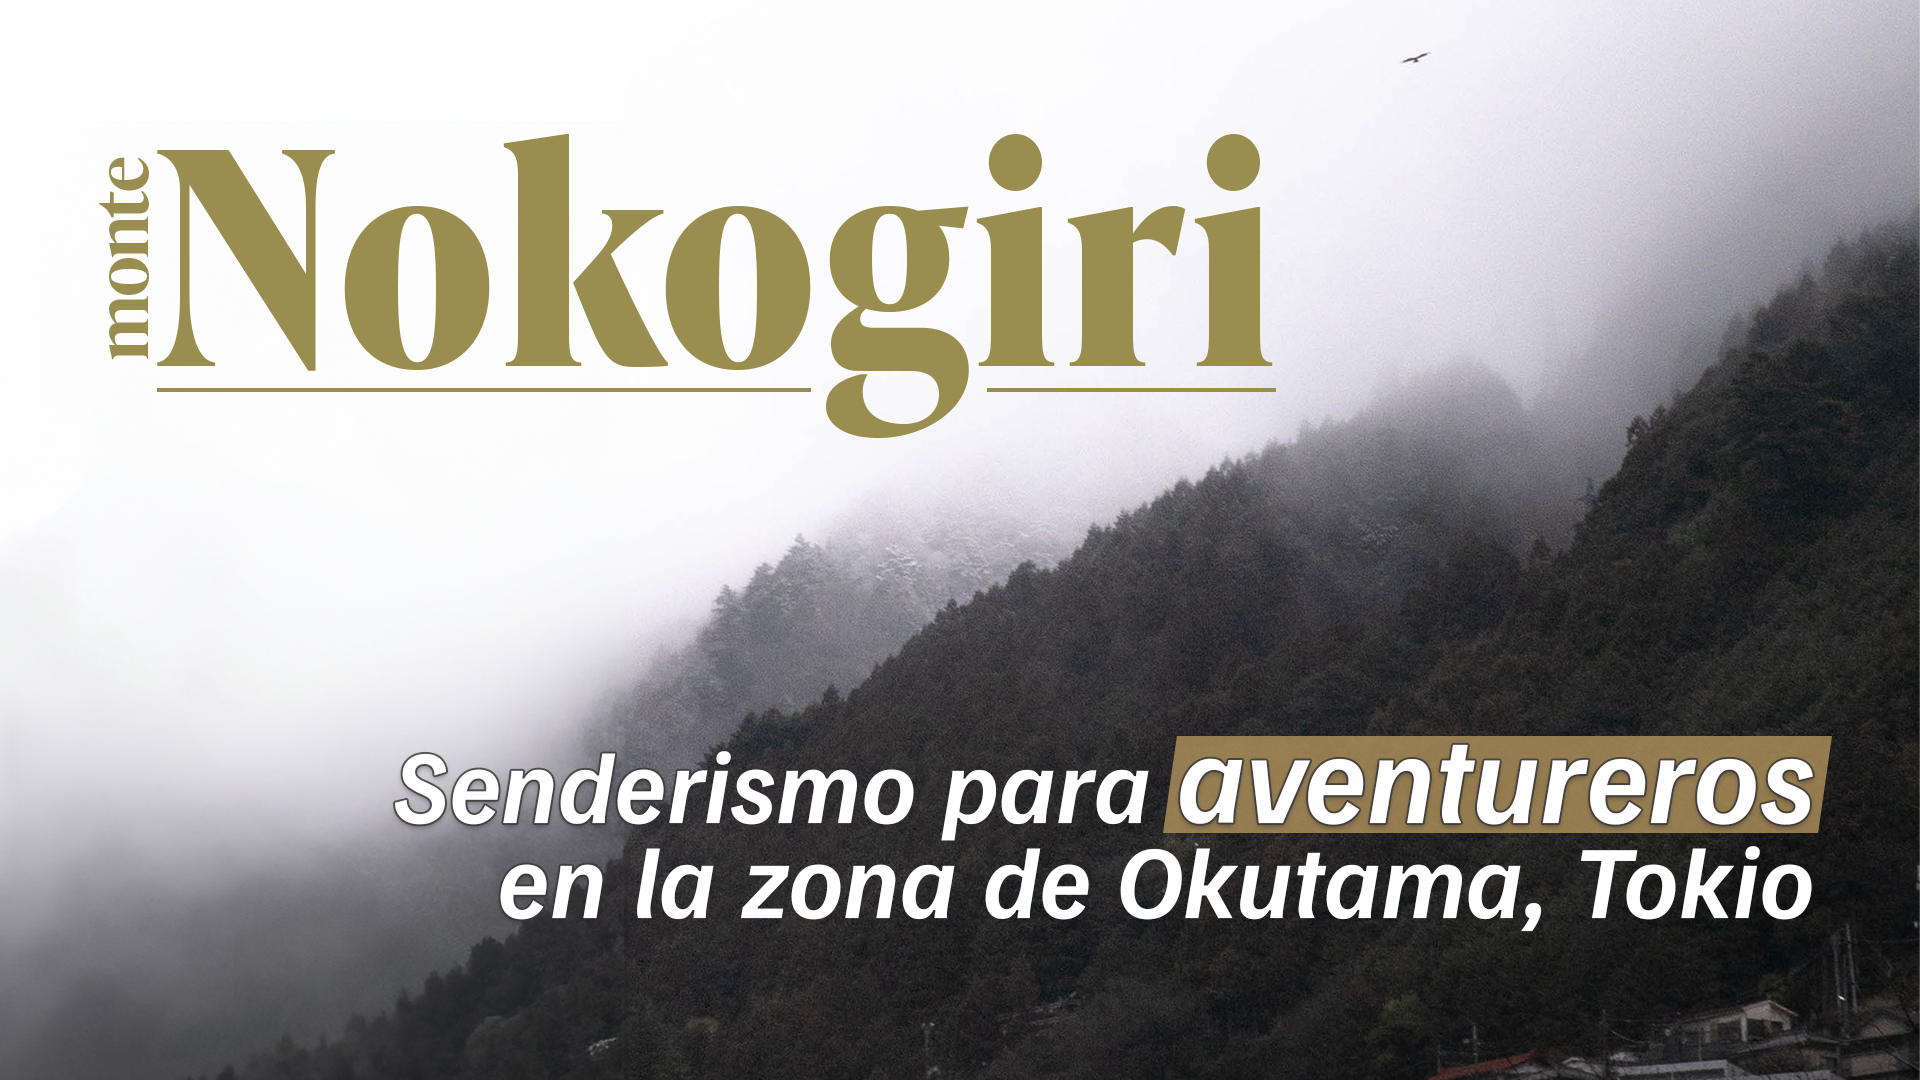 【Monte Nokogiri】 Senderismo para aventureros en la zona de Okutama, Tokio